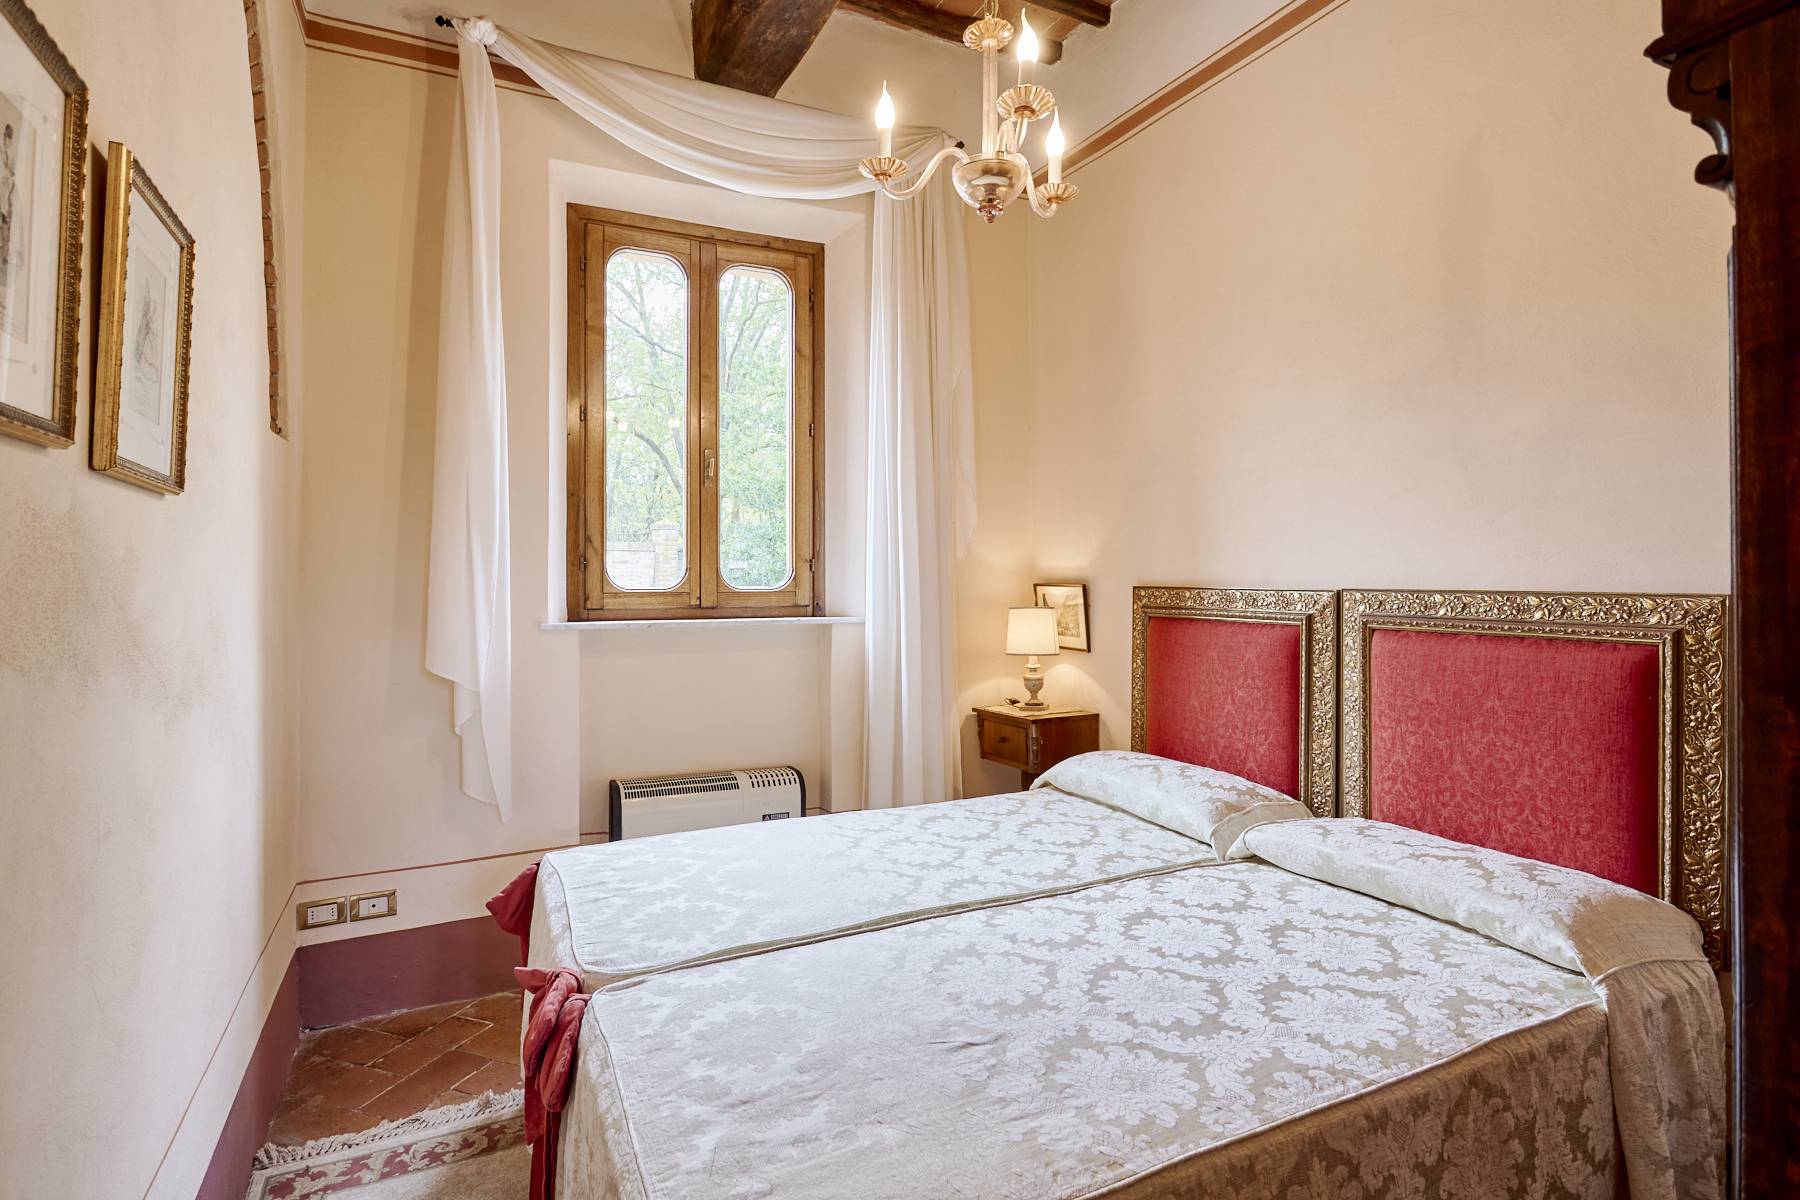 Villa in Vendita a Montepulciano: 5 locali, 860 mq - Foto 12